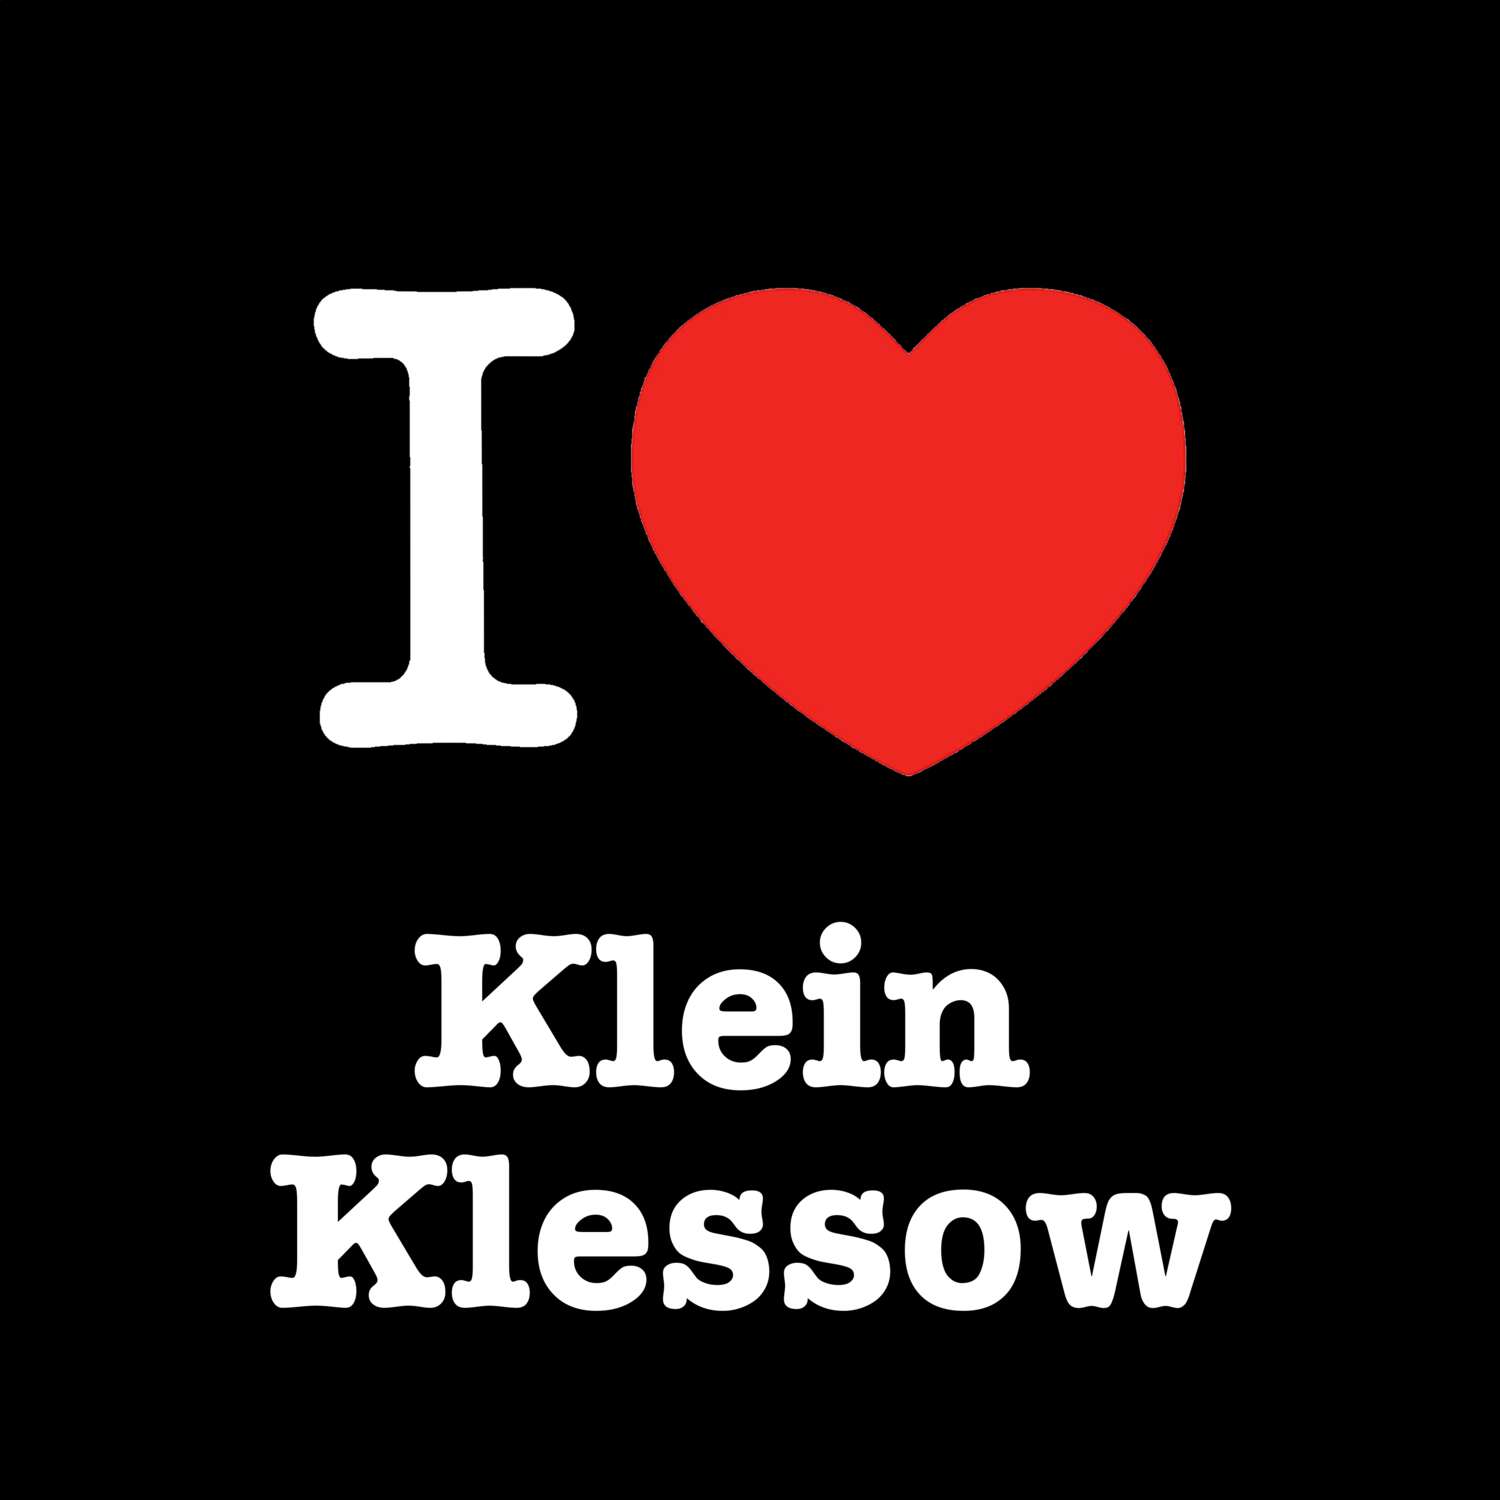 Klein Klessow T-Shirt »I love«